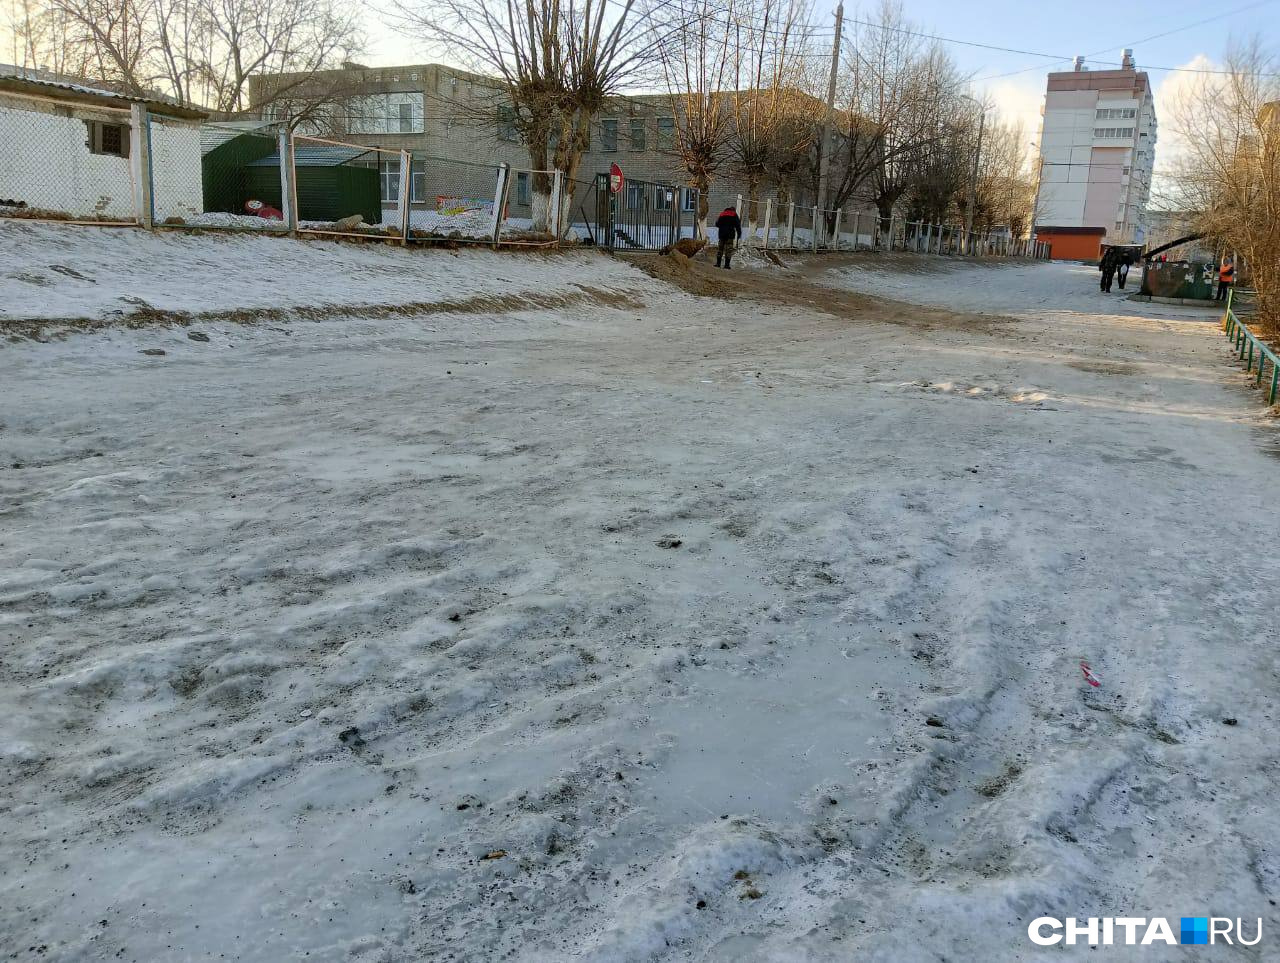 Ледяной каток образовался на улице Читы из-за прорыва трубы